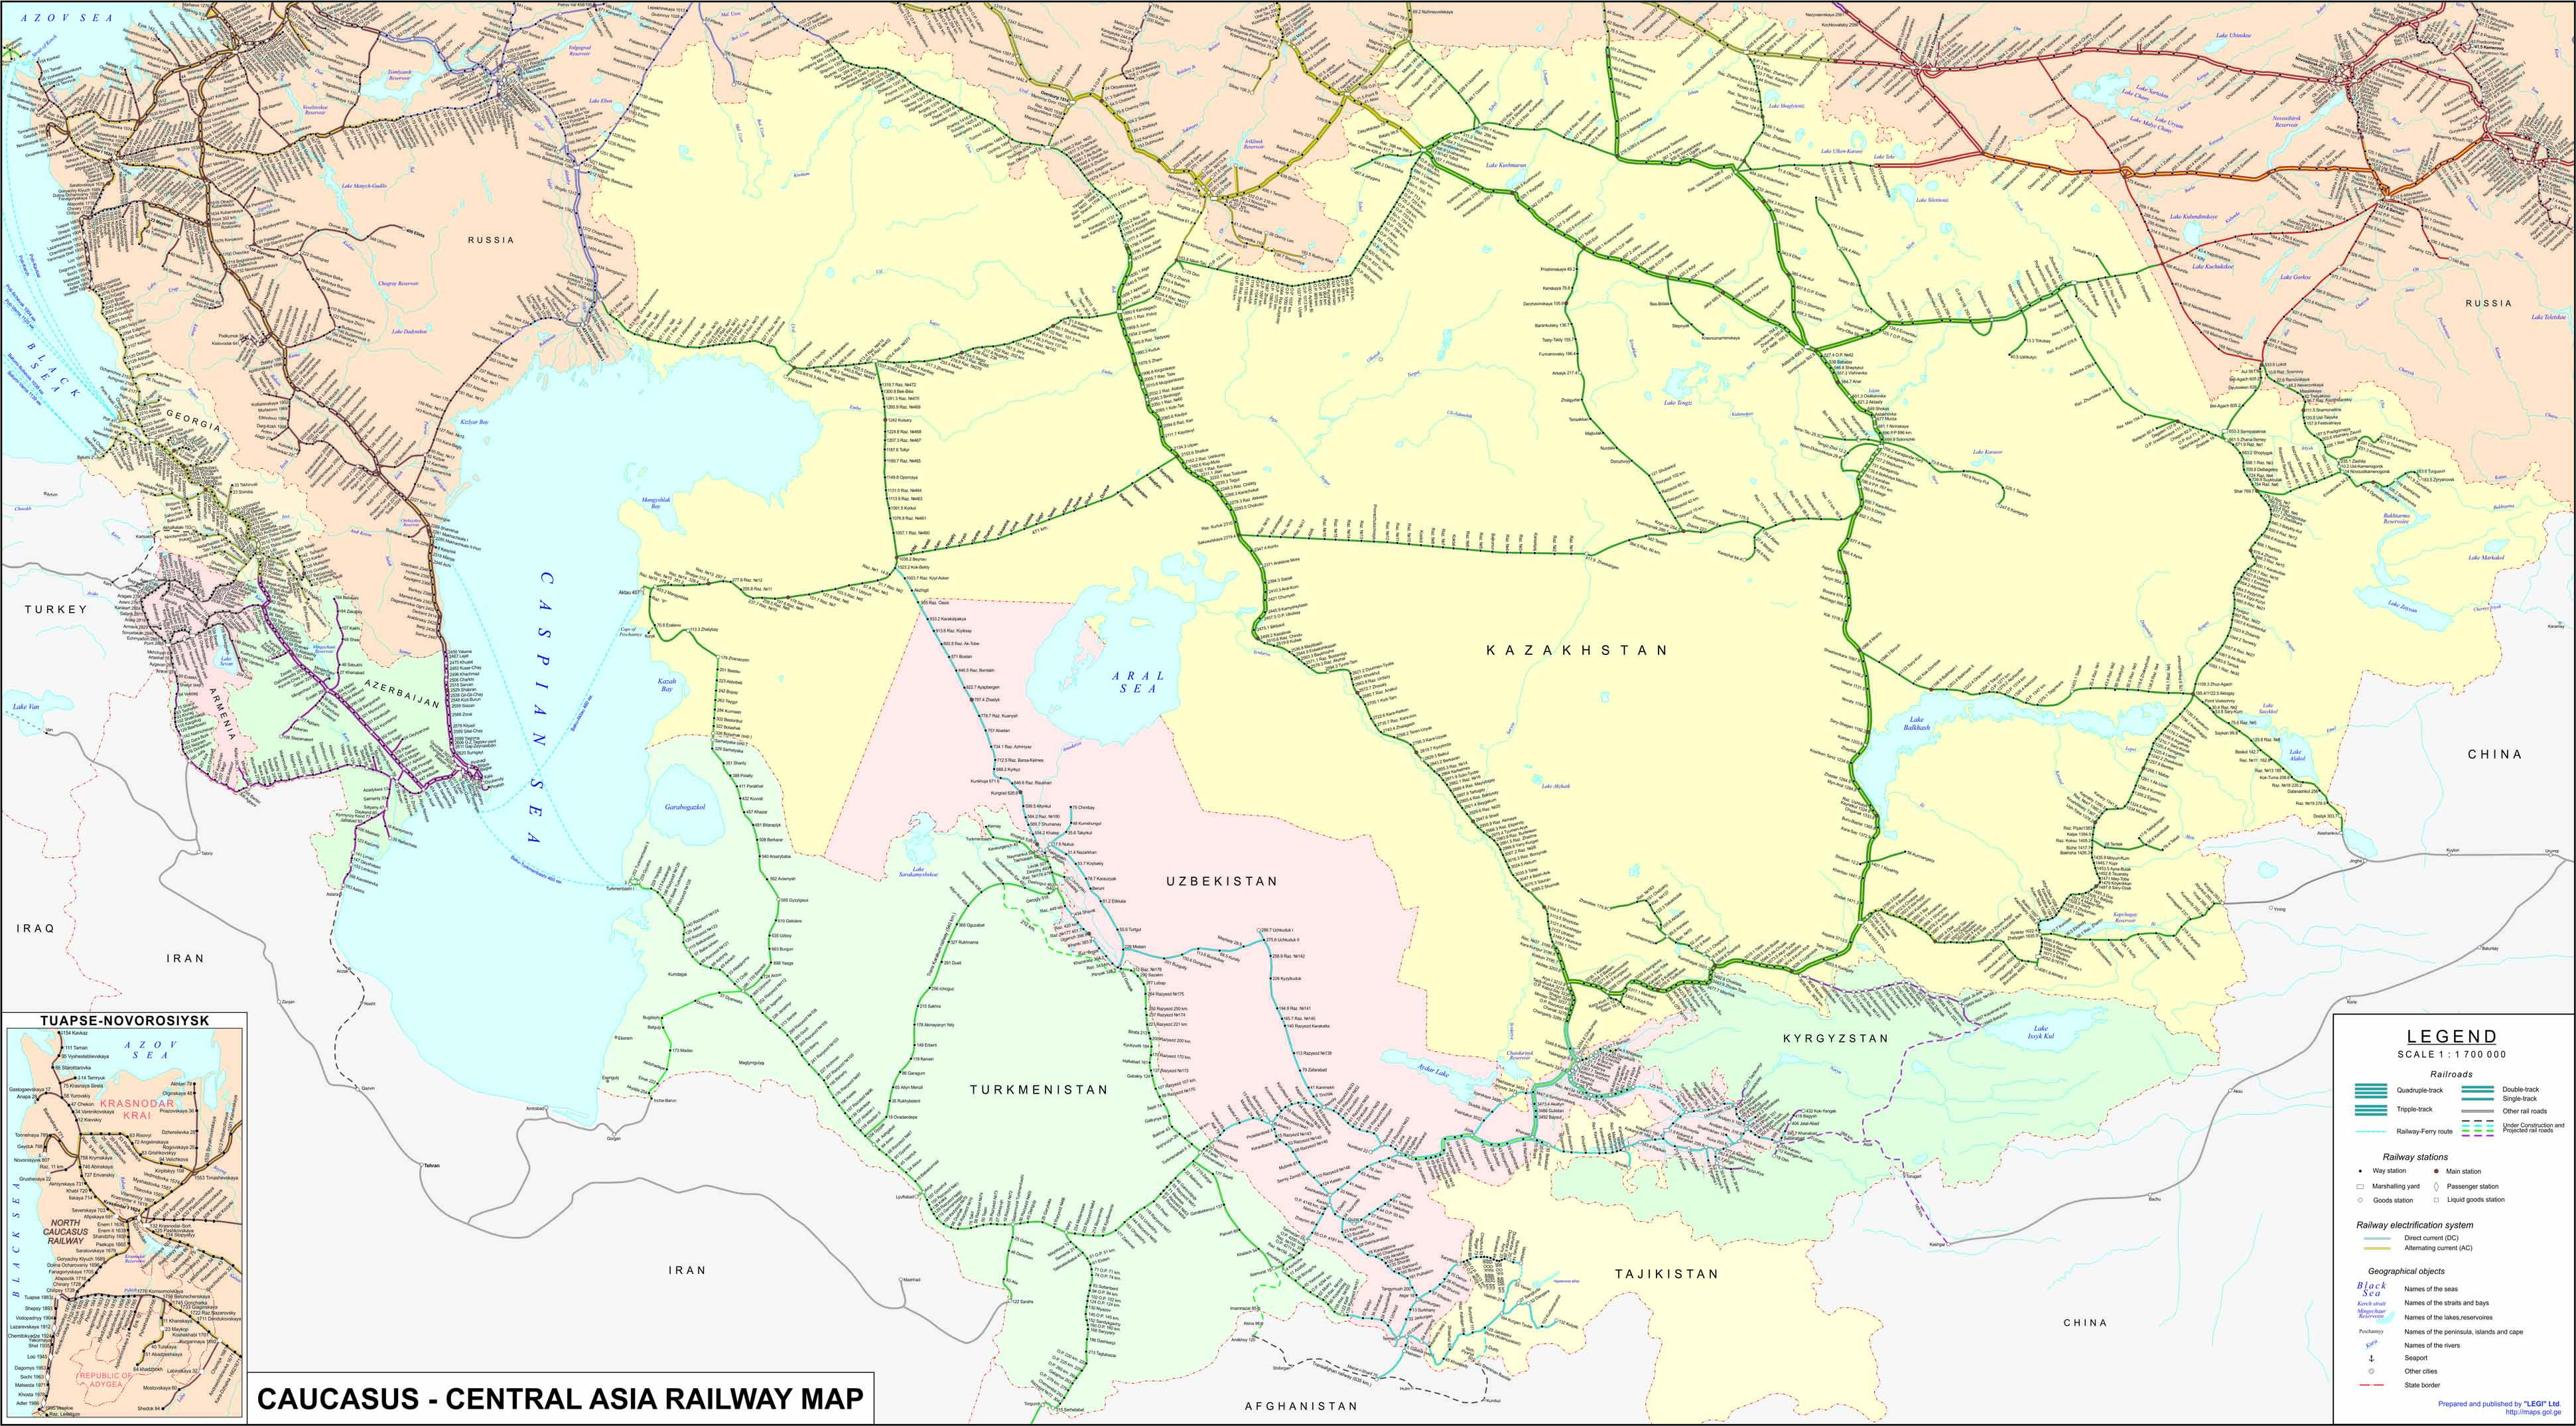 CAUCASUS - CENTRAL ASIA RAILWAY MAP